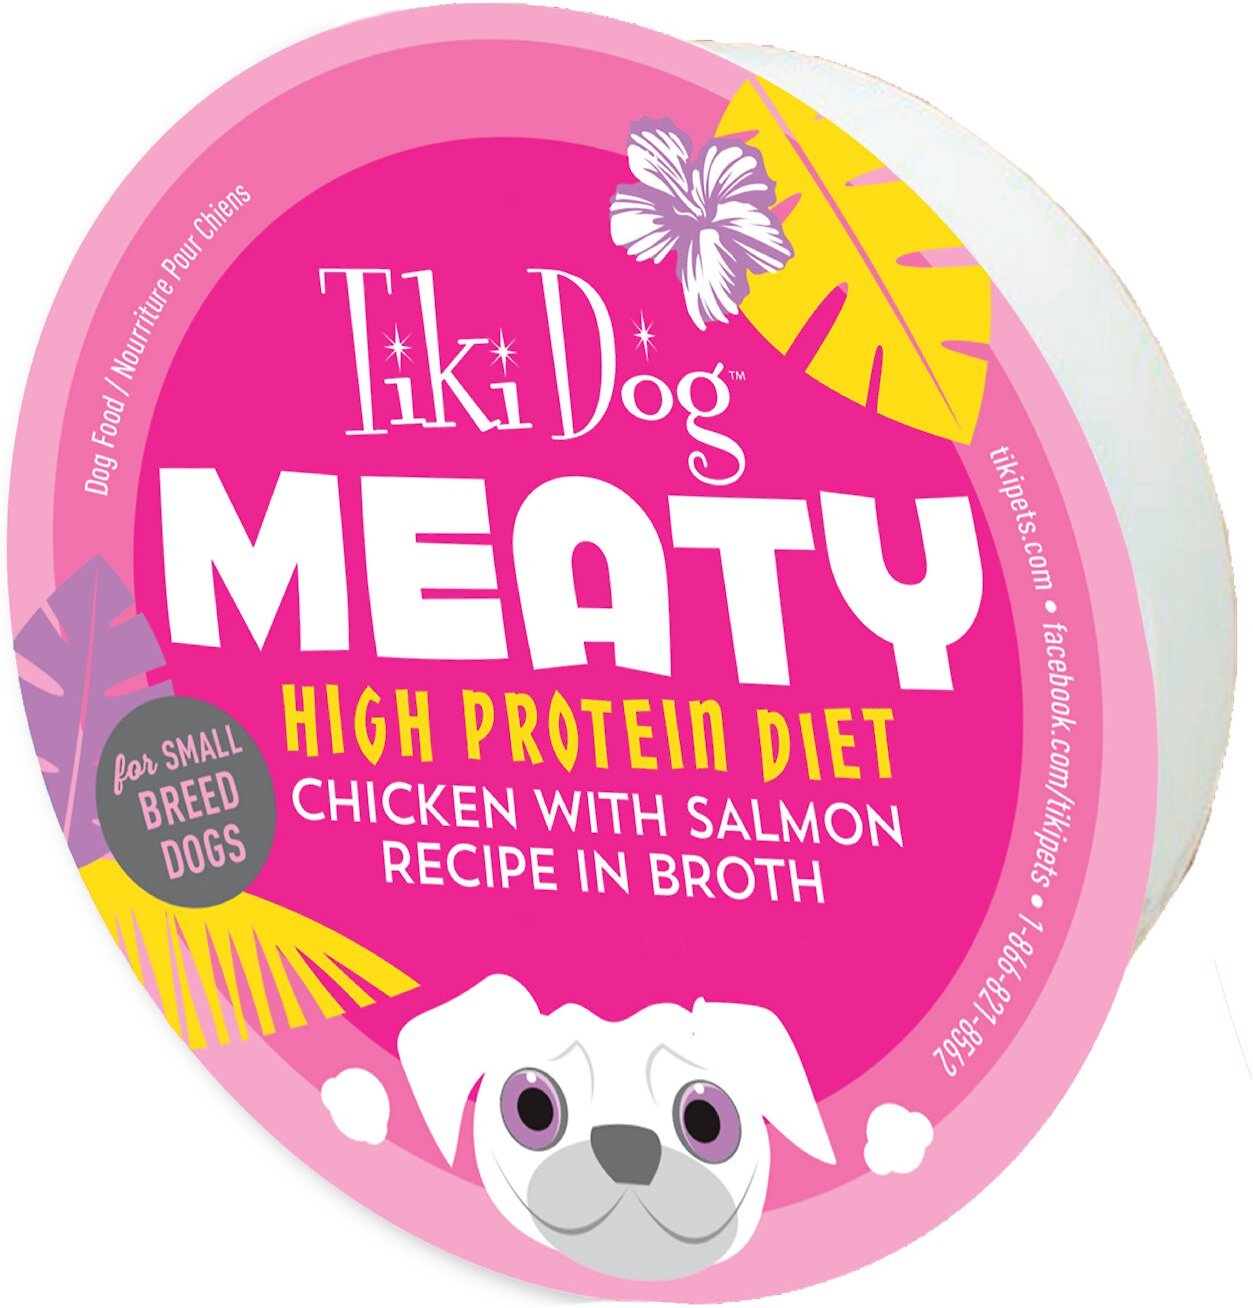 TIKI DOG Meaty High Protein Diet Chicken with Salmon